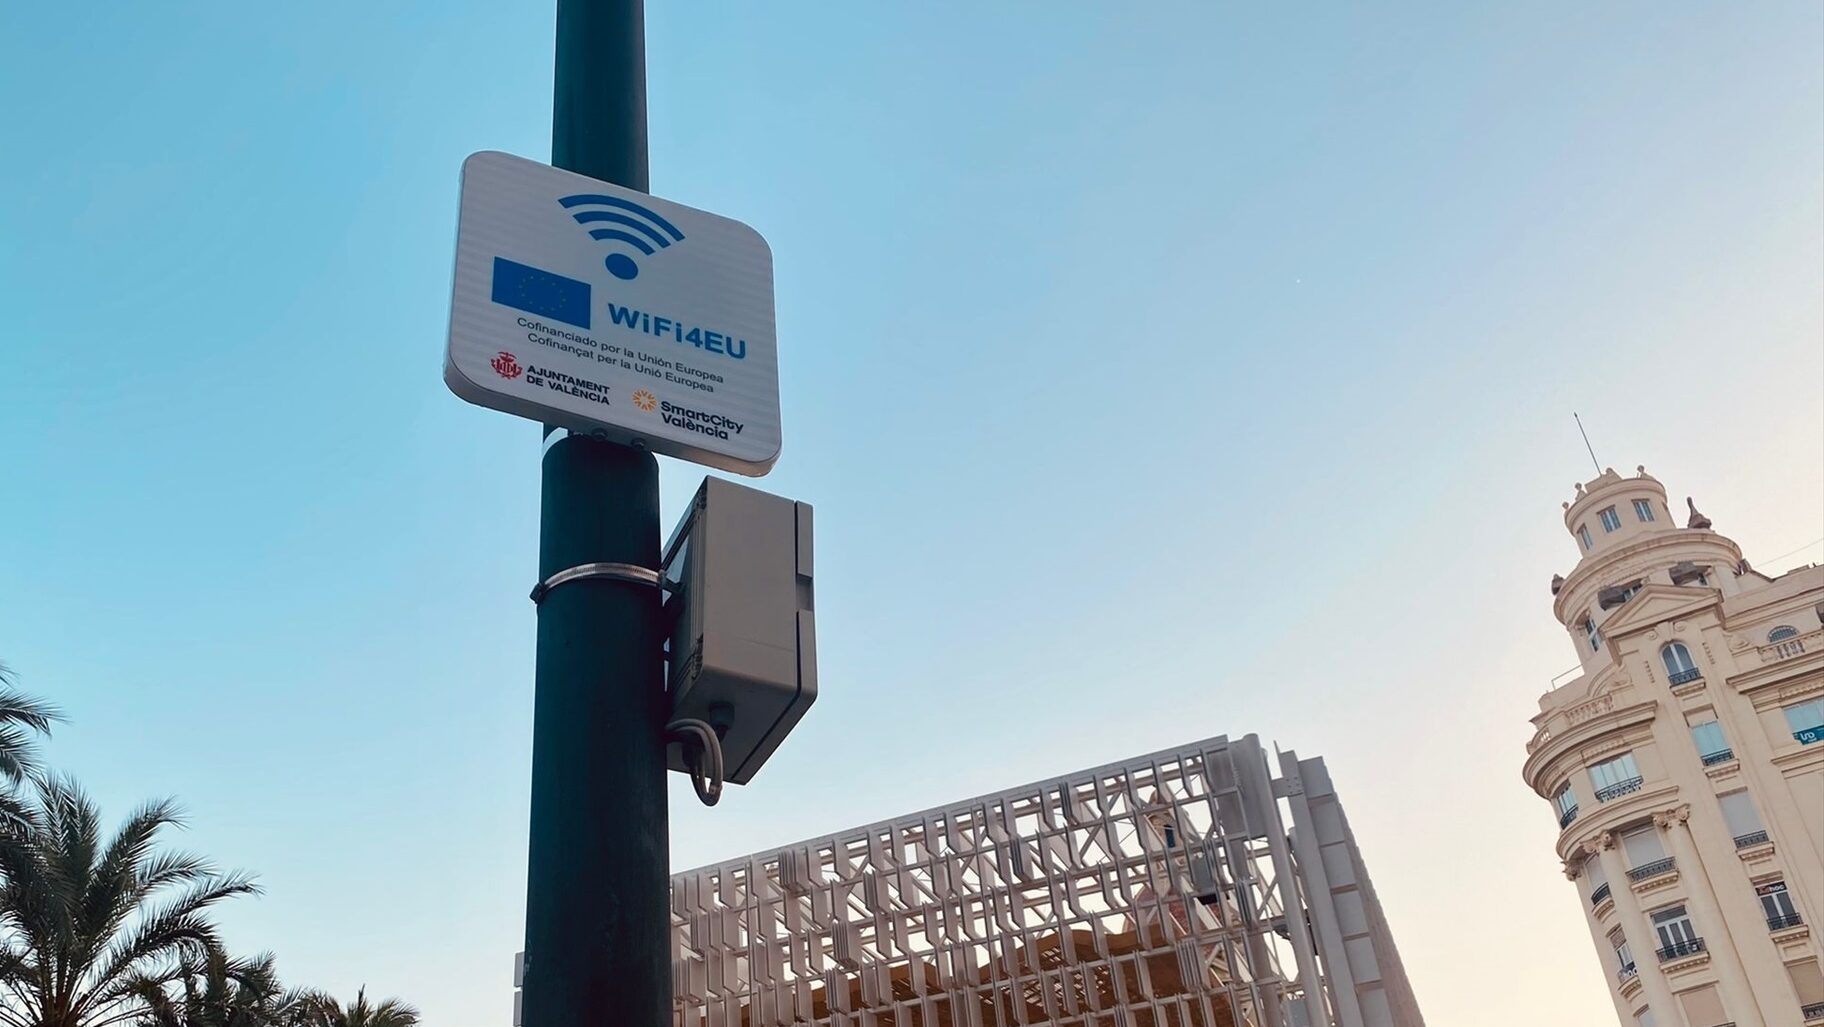 Los barrios suman otros 76 nuevos puntos de wifi gratuito para "plantar cara a la brecha digital"